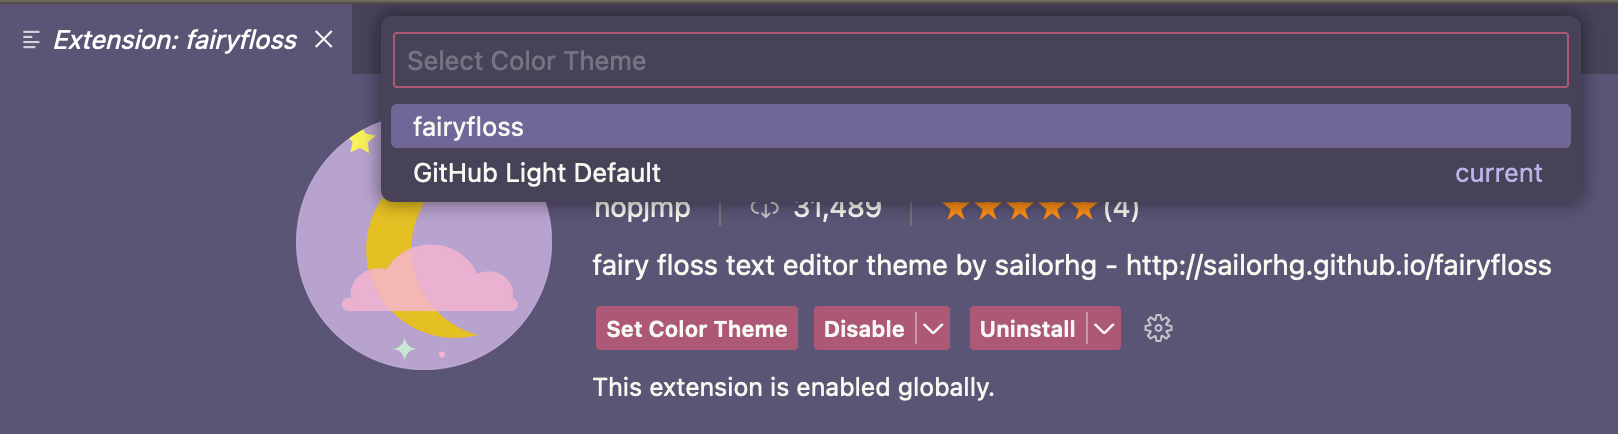 “选择颜色主题”下拉列表的屏幕截图，其中选择了“fairyfloss”主题。